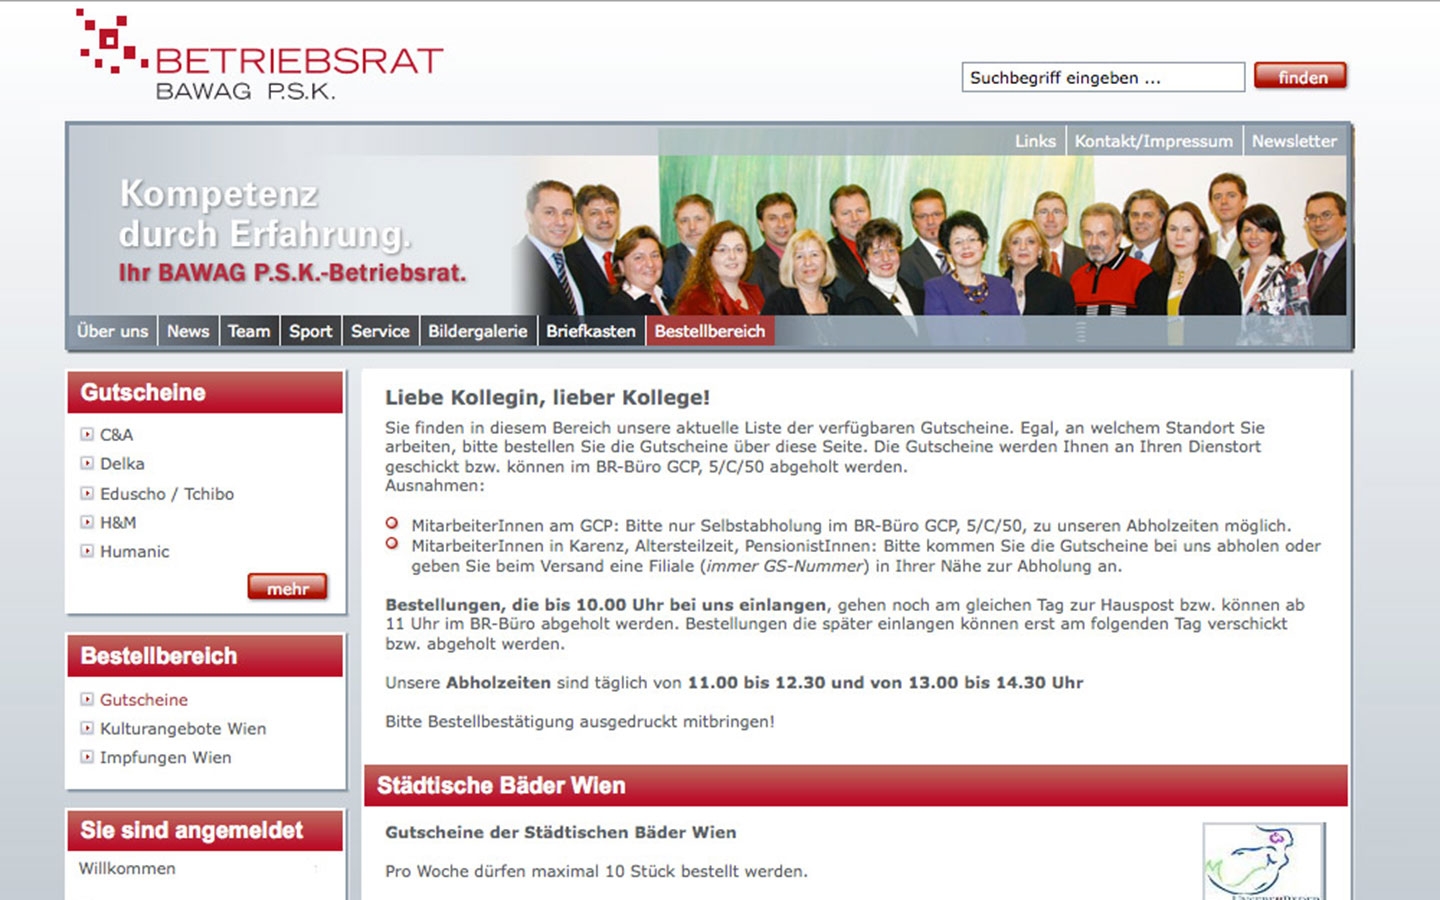 BAWAG PSK Betriebsrat | bawagpsk-betriebsrat.at | 2011 (Screen Only 01) © echonet communication / Auftraggeber